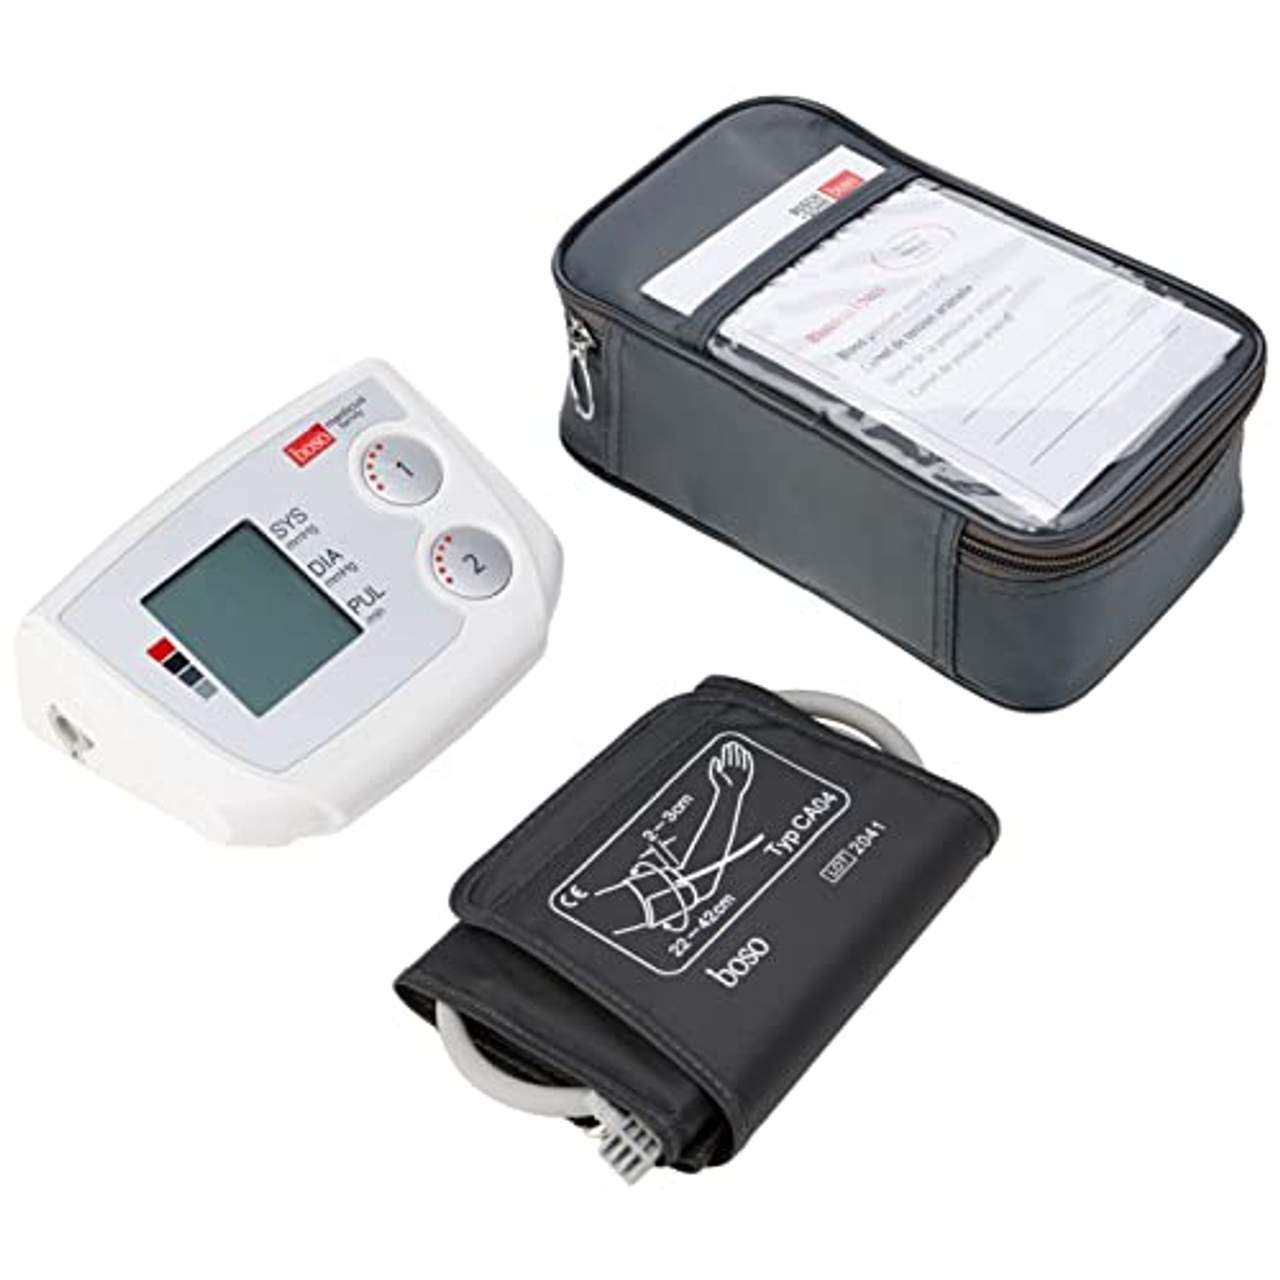 boso medicus family Partner-Blutdruckmessgerät